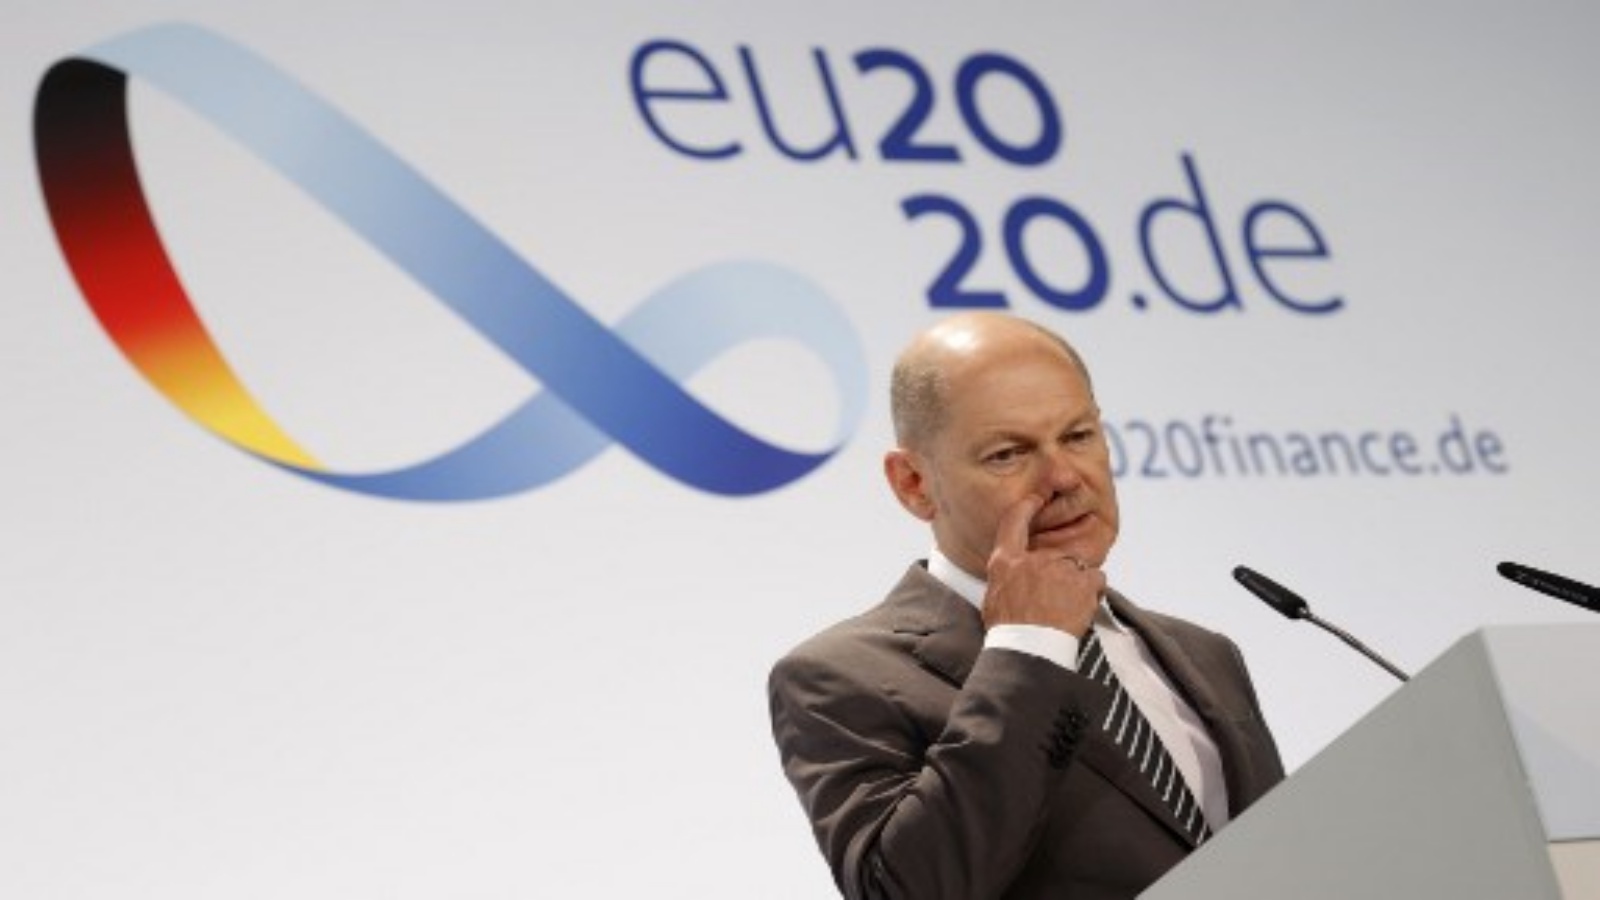 وزير المالية الألماني ونائب المستشار أولاف شولتز يلقي بيانًا خلال اليوم الثاني من الاجتماع غير الرسمي لوزراء الاقتصاد والشؤون المالية في الاتحاد الأوروبي في برلين ، 12 سبتمبر 2020.